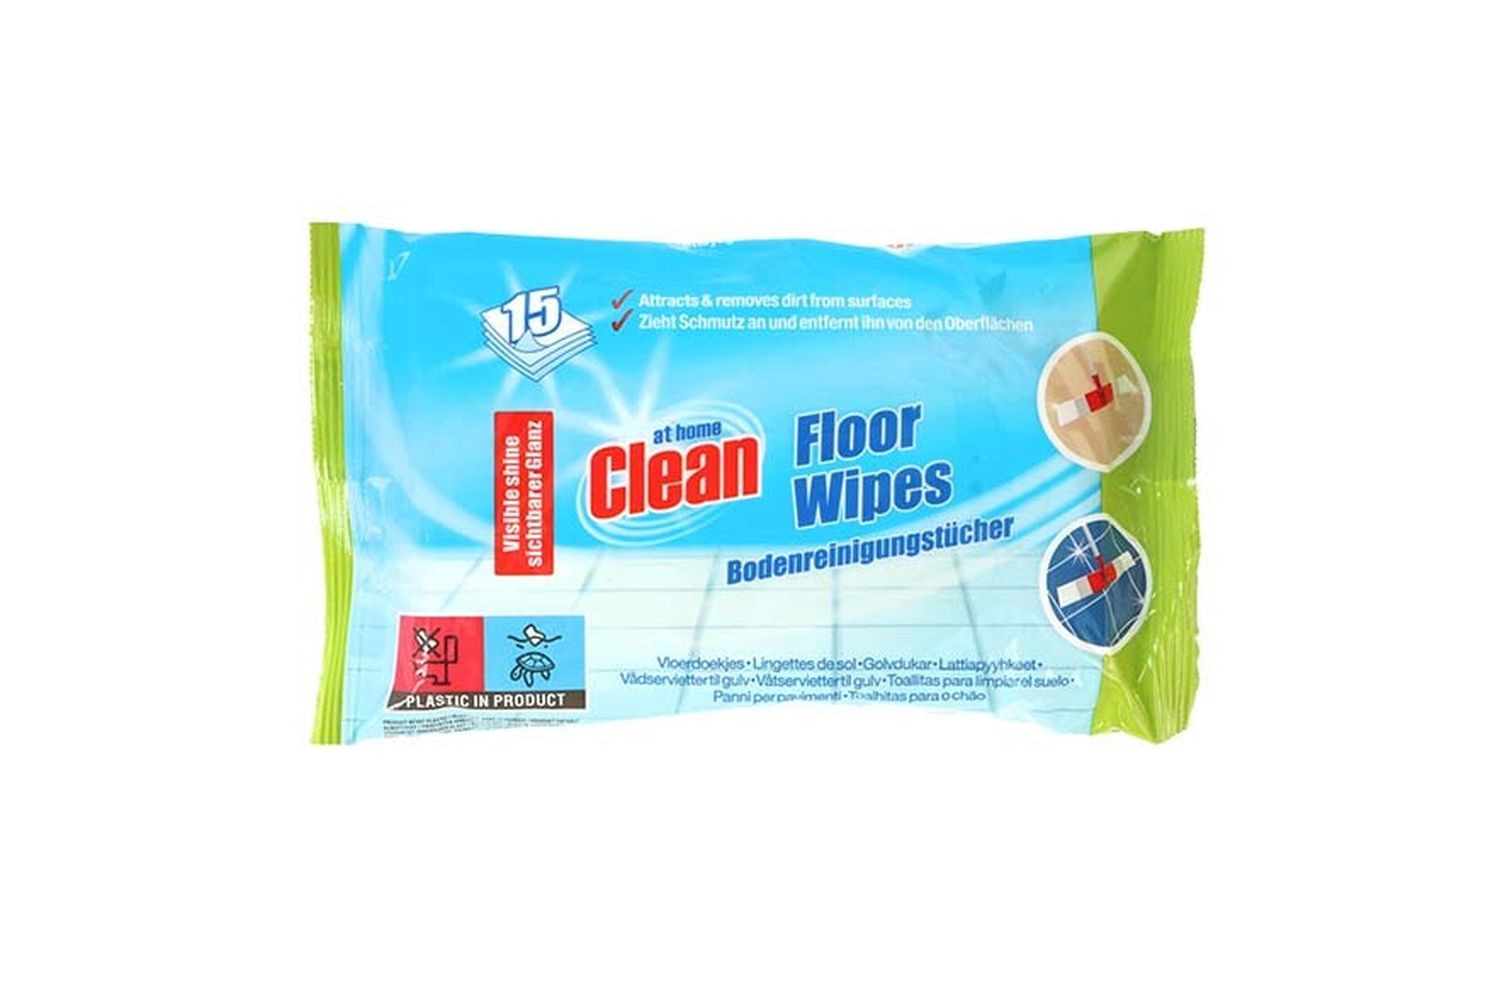 Lingettes nettoyantes pour sols At Home Clean - Lingettes pour